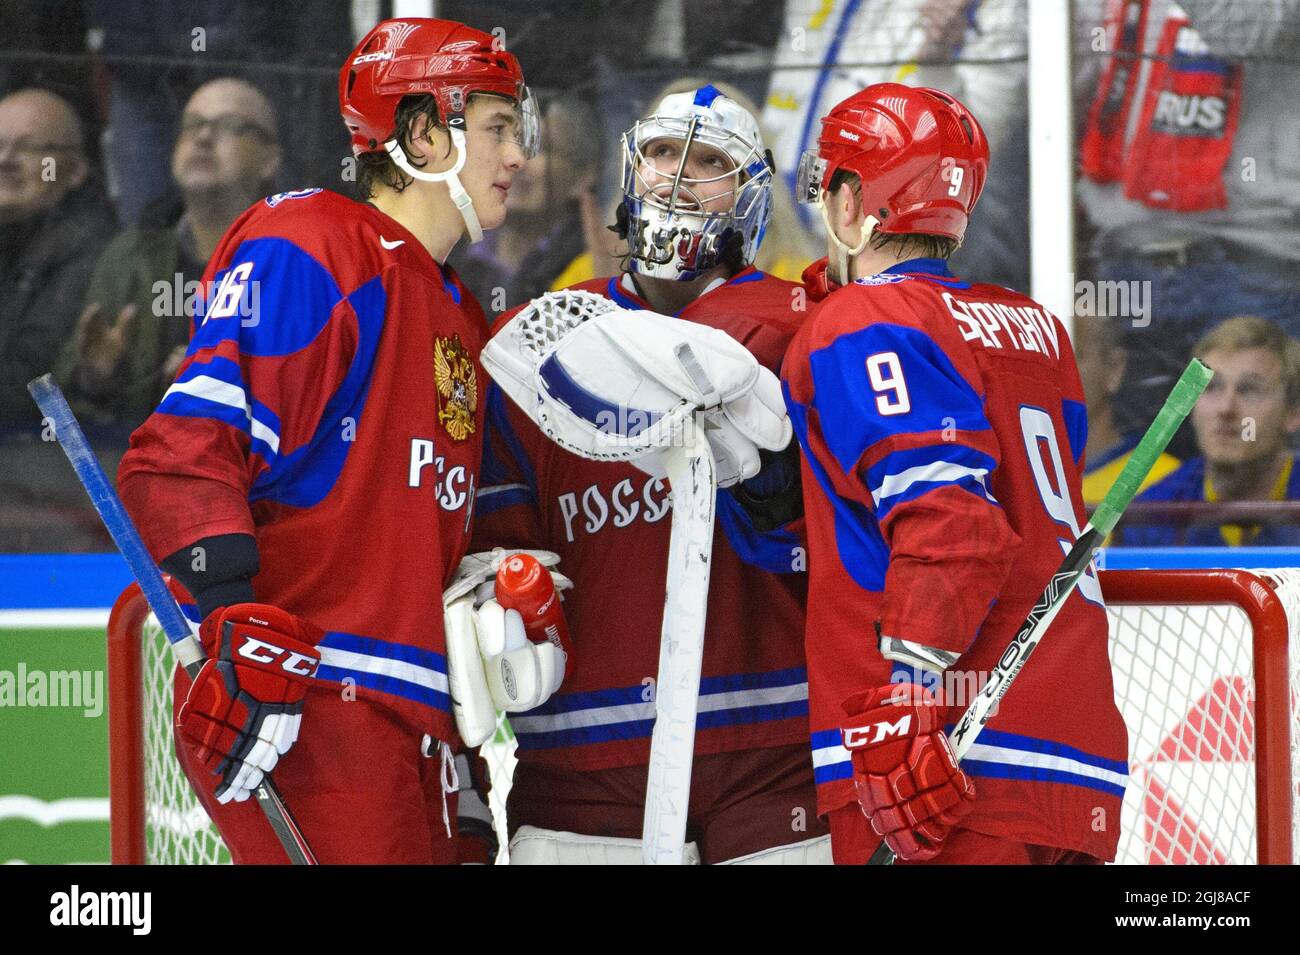 Salavat Yulayev Ufa 2012-13 KHL Hockey Jersey Andrei Vasilevskiy Vasilevsky  Dark